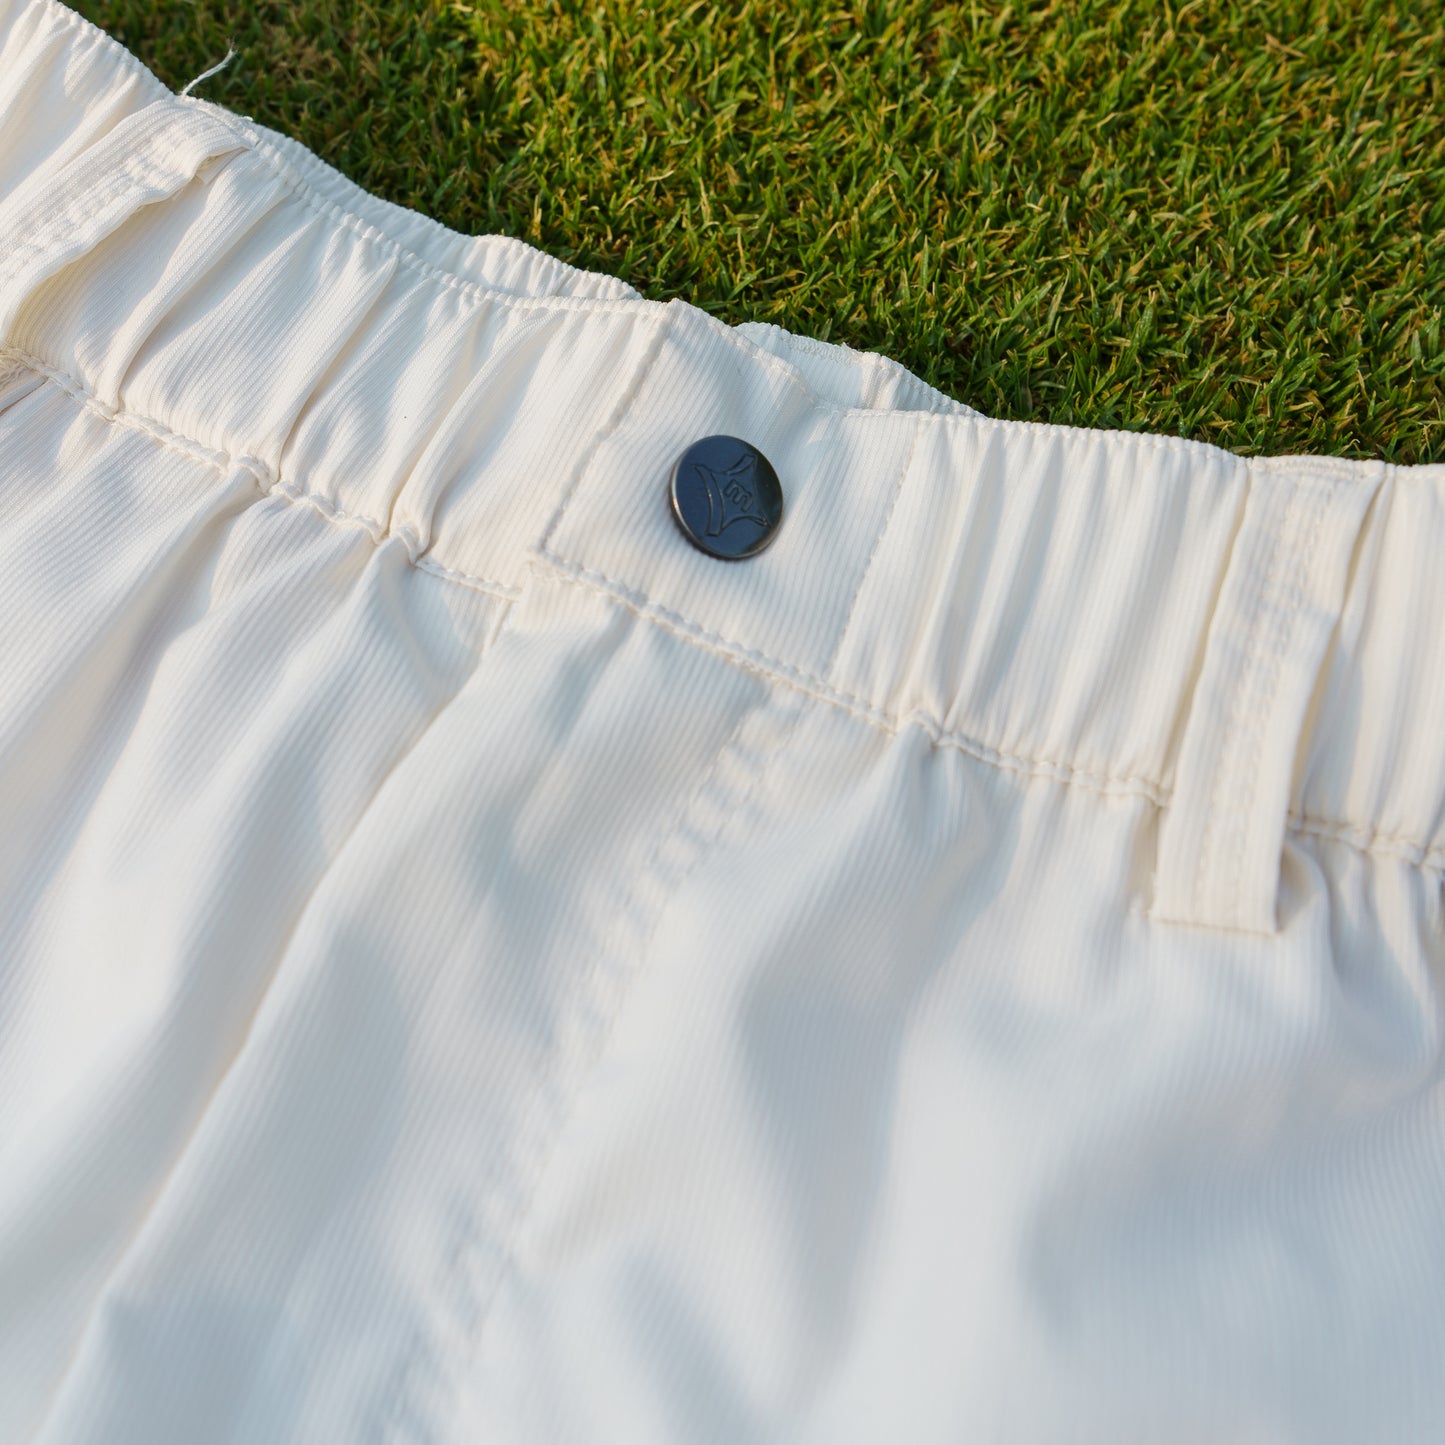 The Range Golf Shorts (Bone)